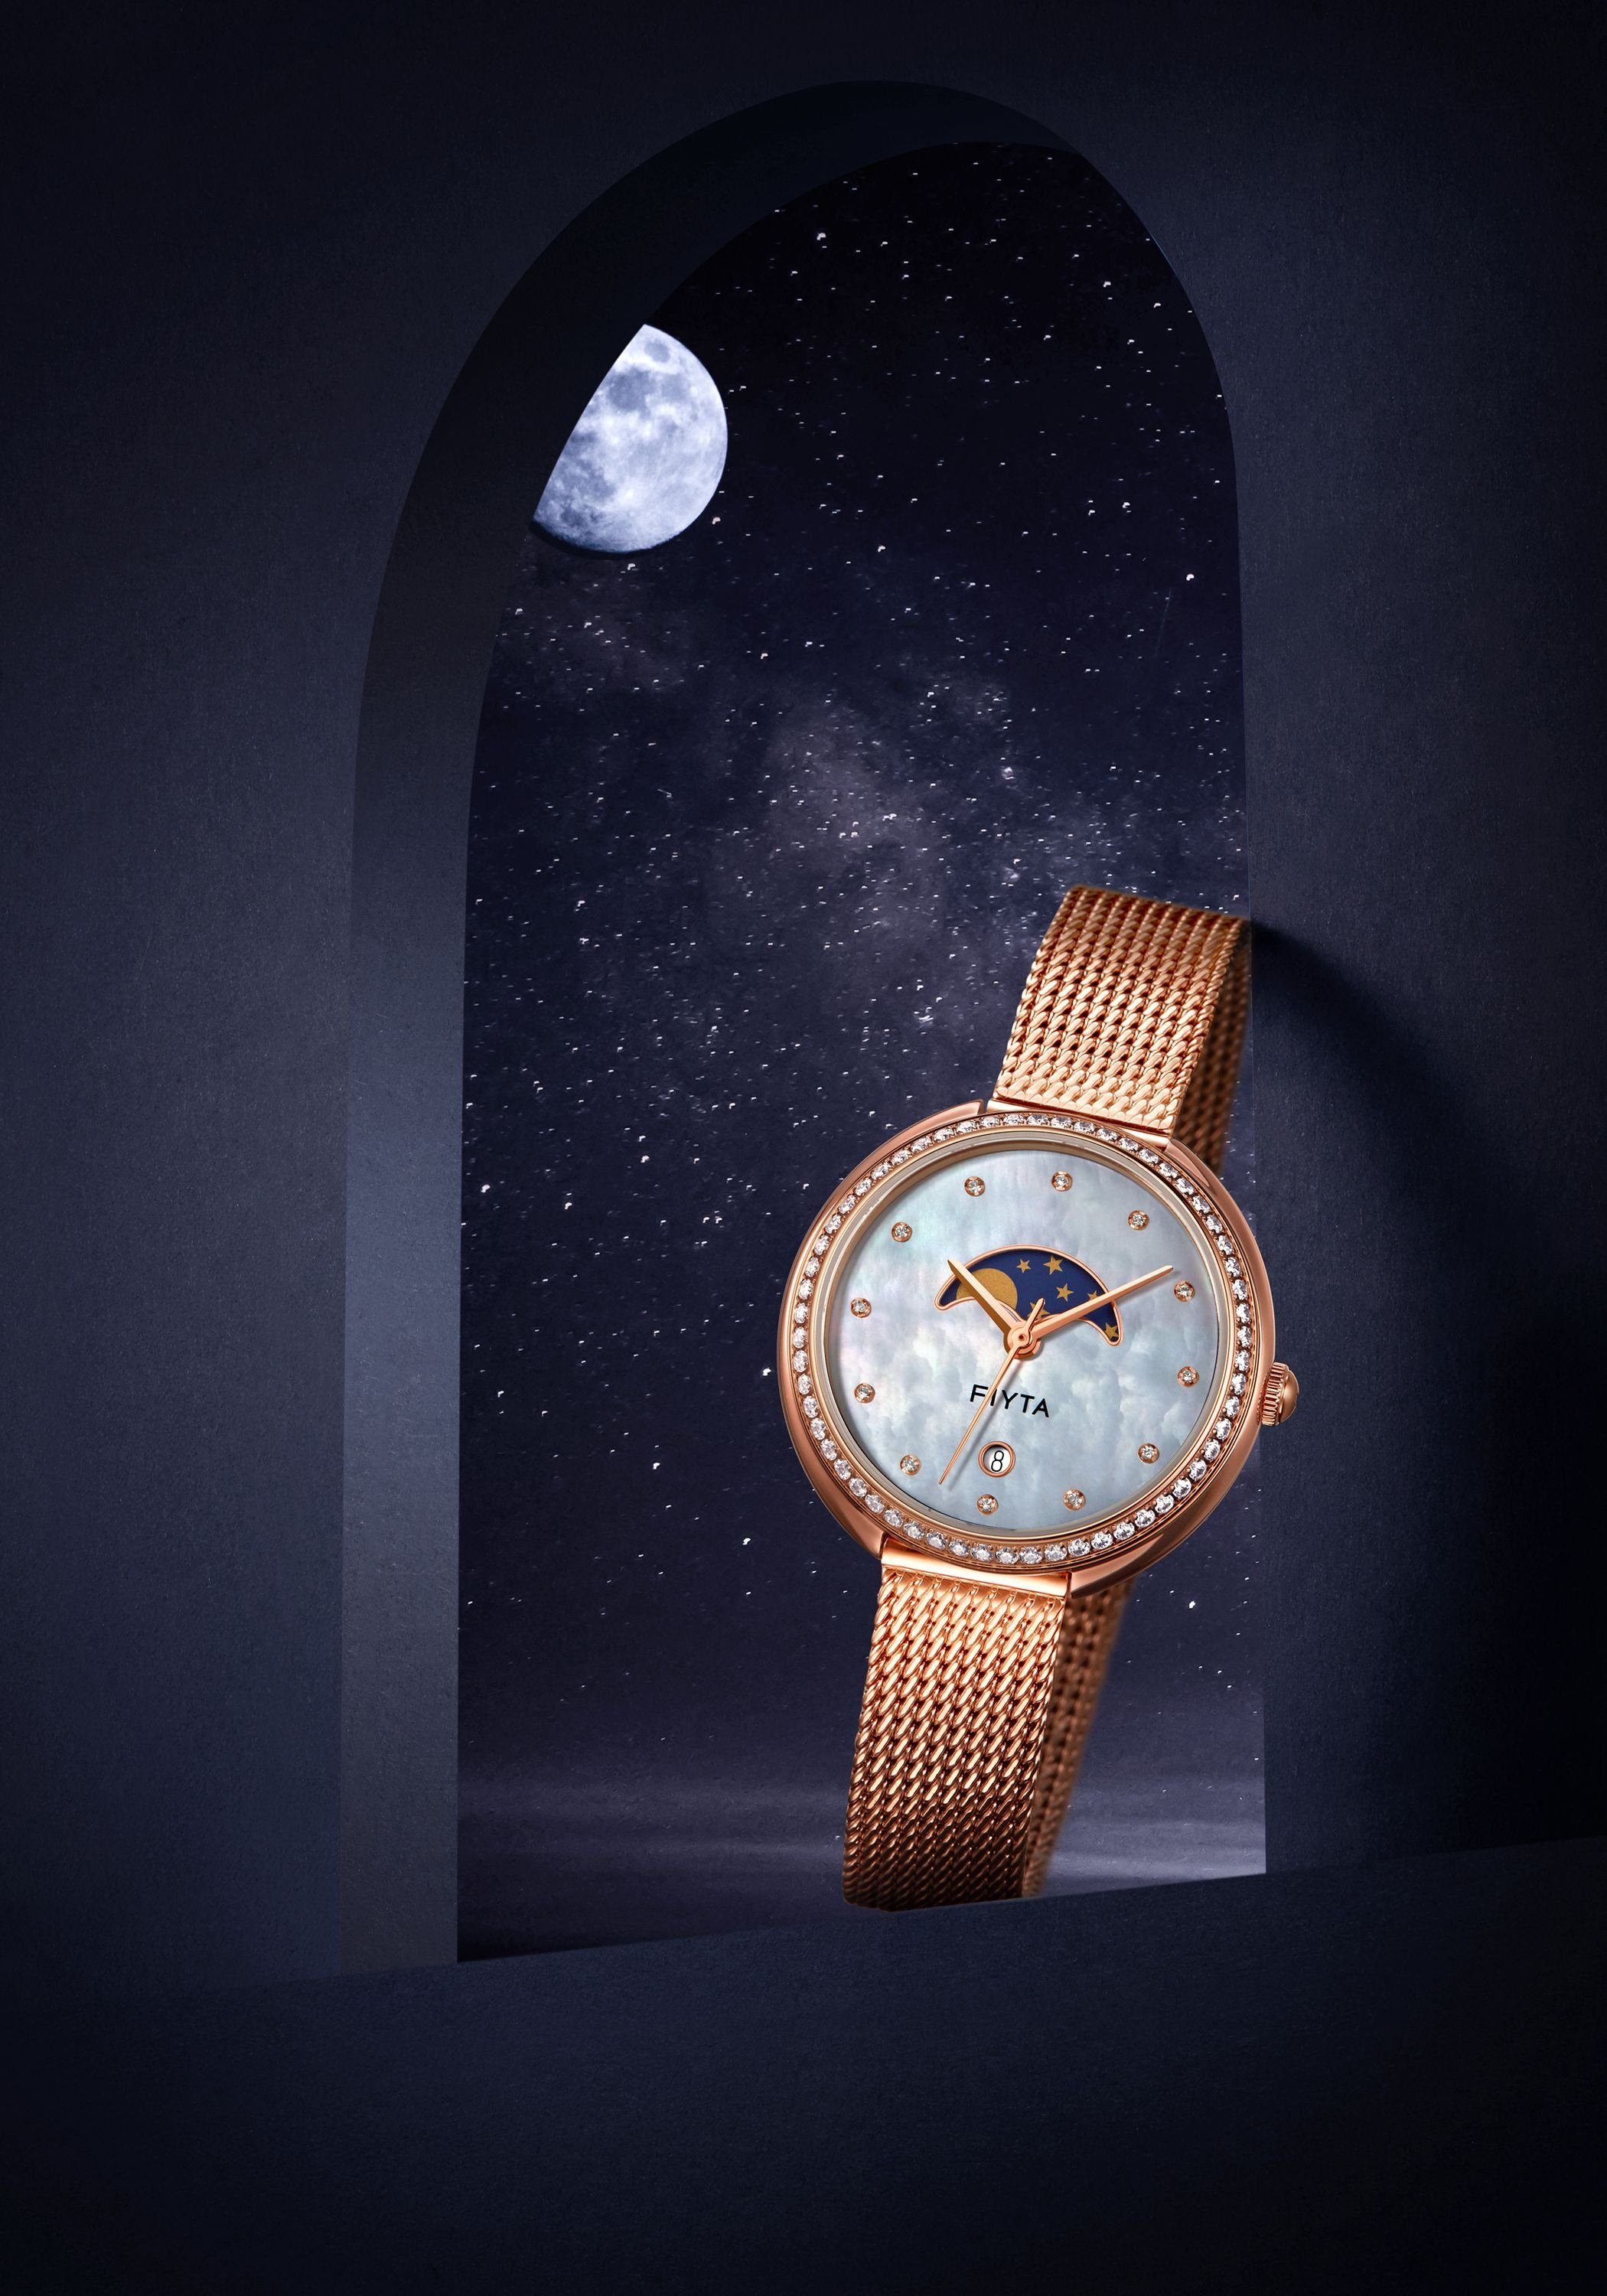 FIYTA Quarzuhr L865005.PWPD mit Mondphase Milanaise-Armband, Datum, Fancy und